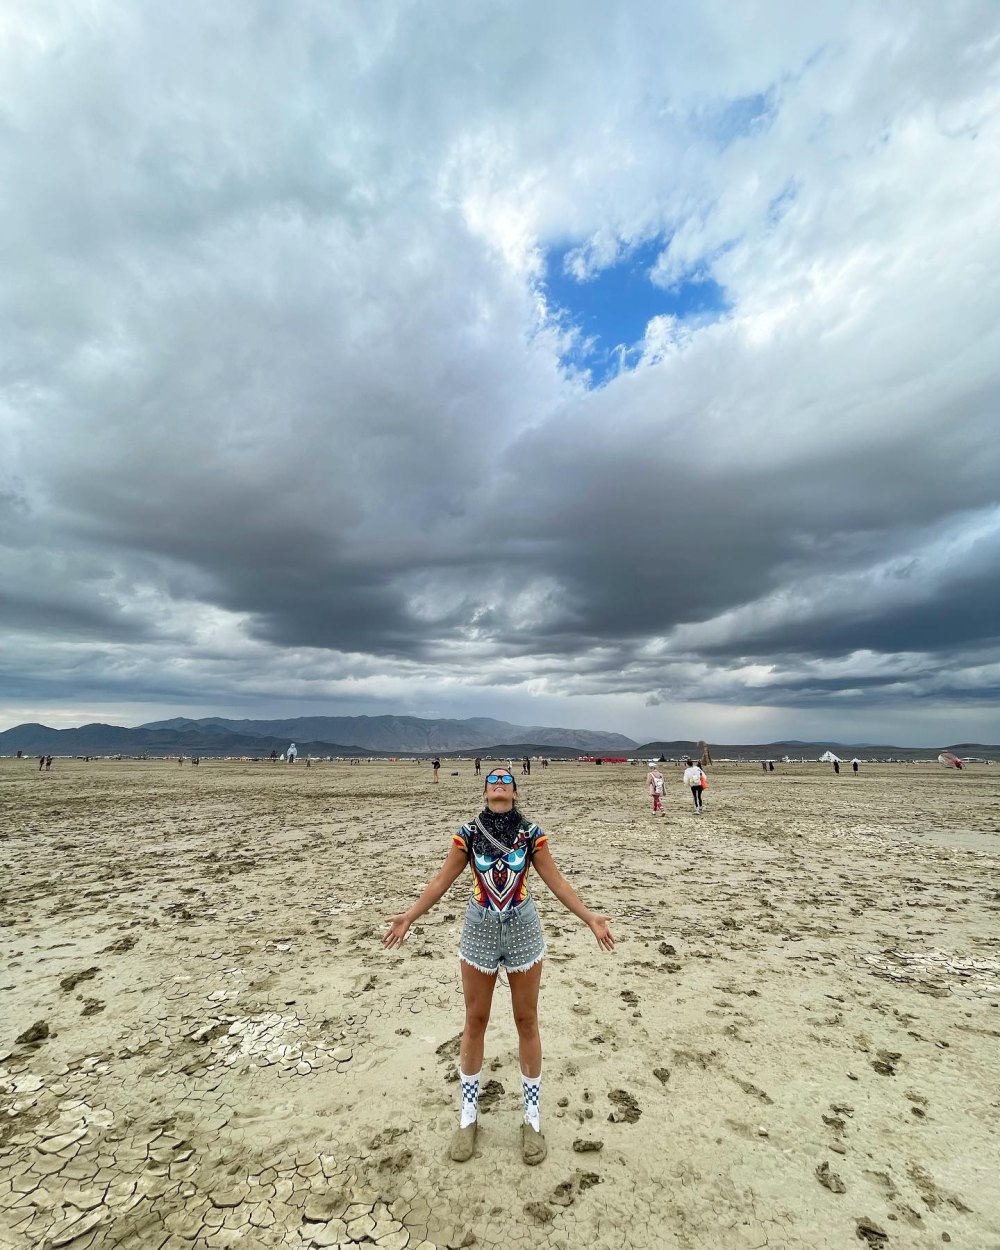 Danica Patrick Was Stuck at Beyond Memorable Burning Man